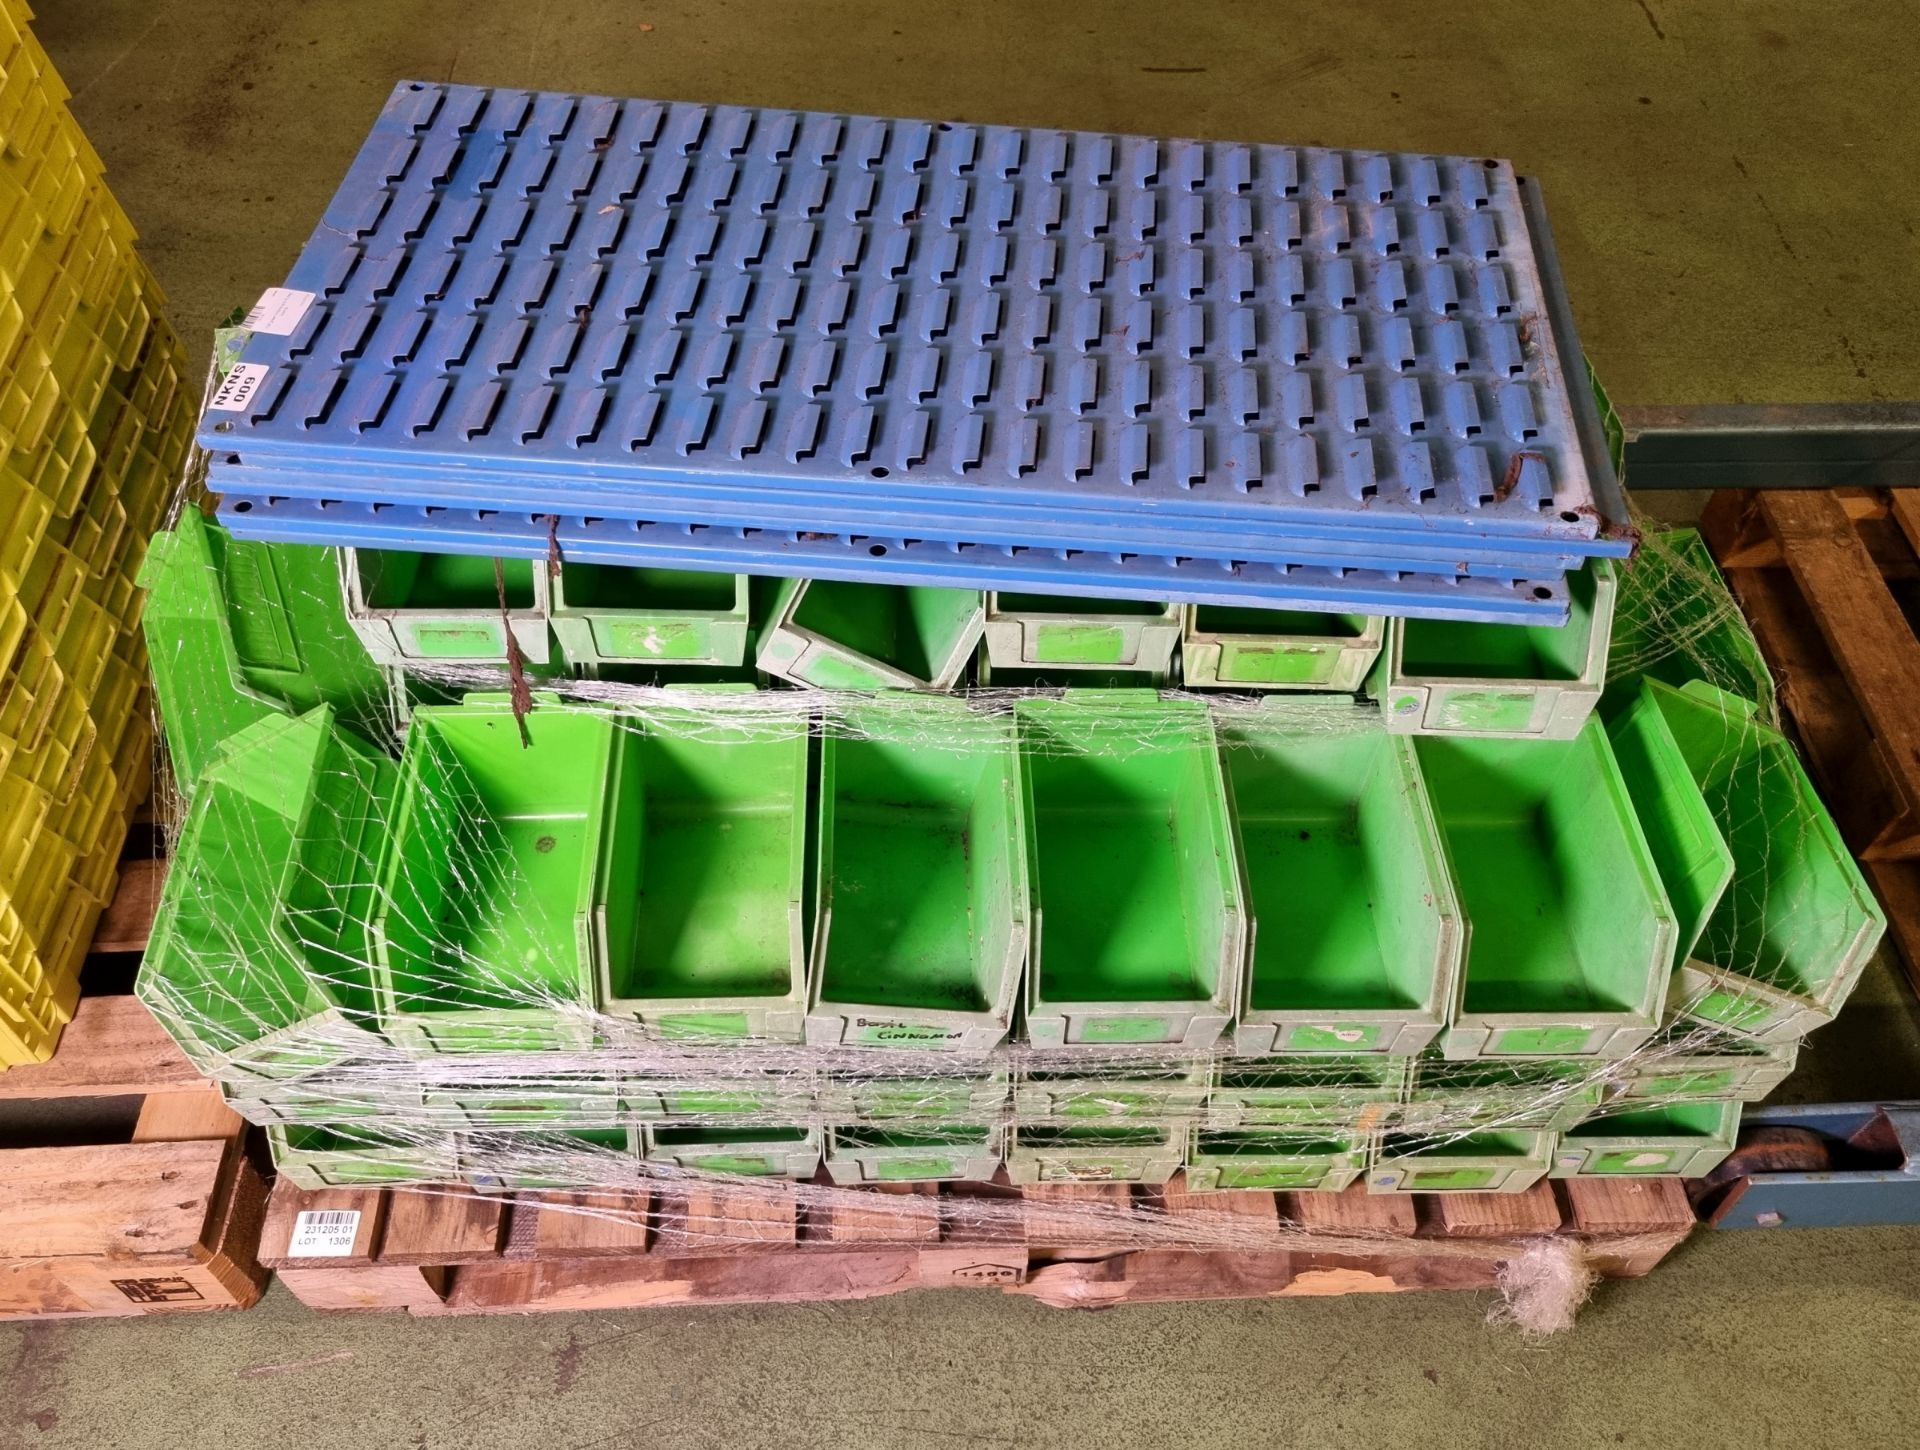 100x green linbins & 6 peg boards